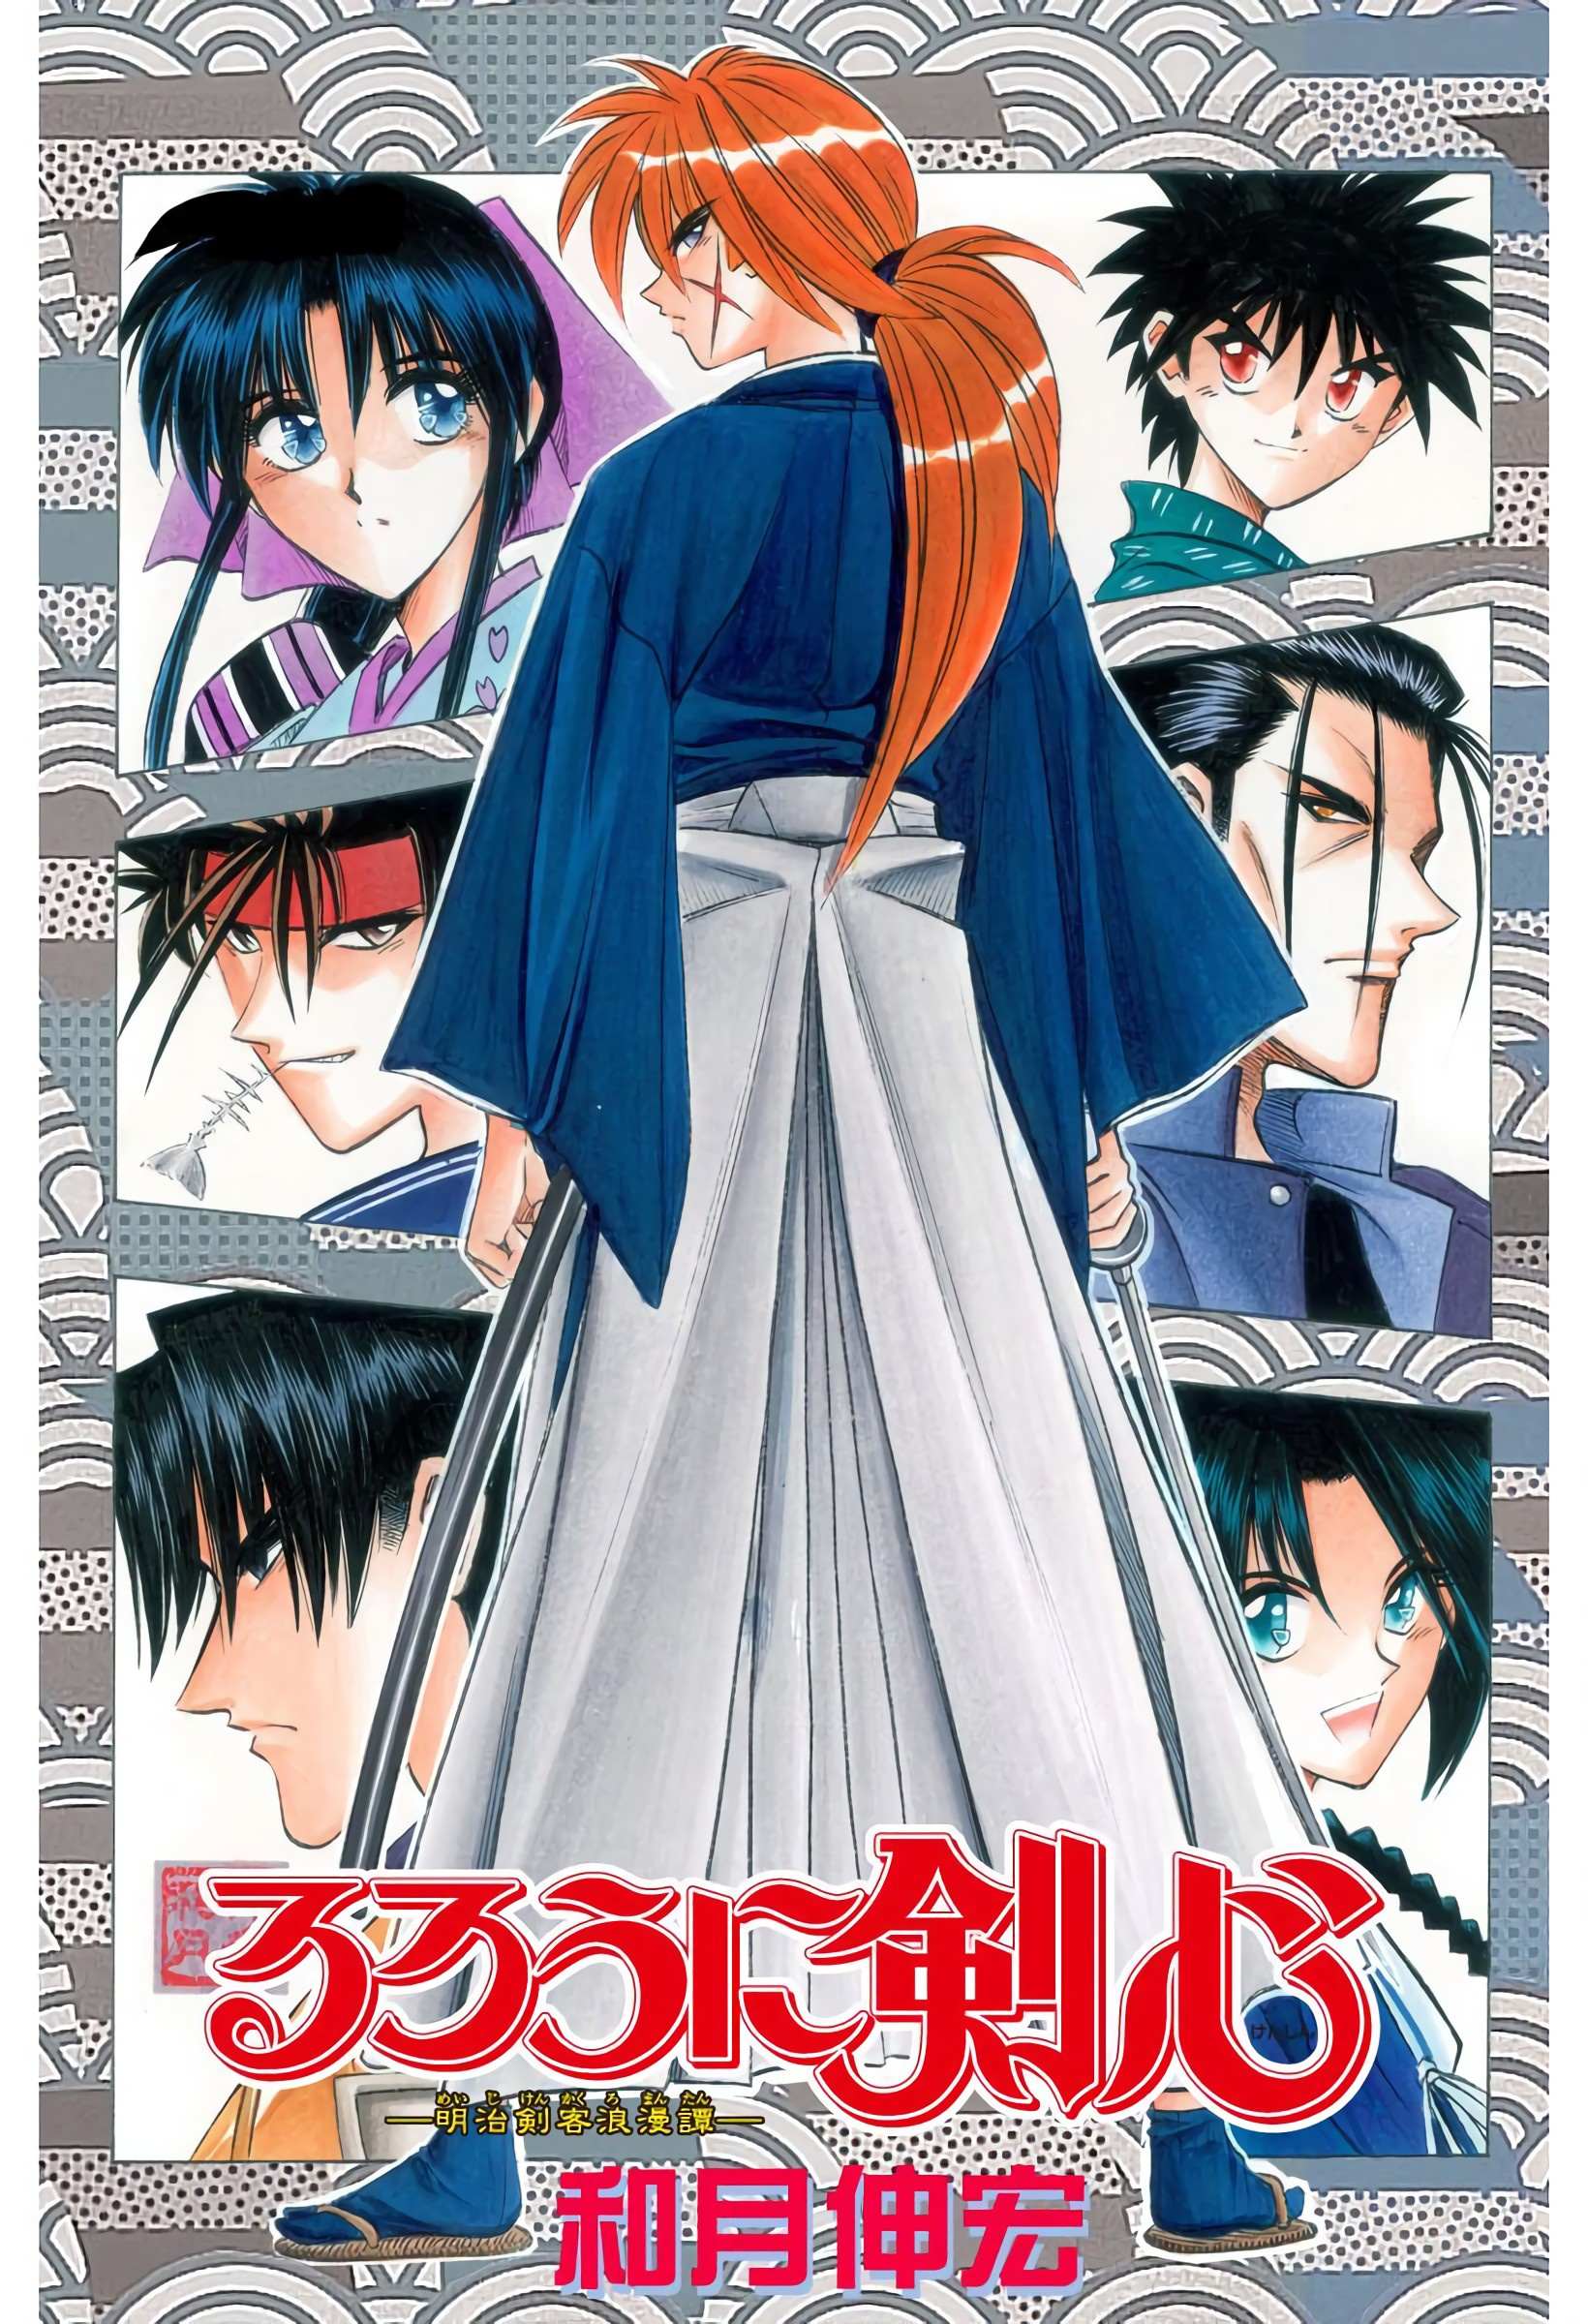 Rurouni Kenshin: Meiji Kenkaku Romantan - Digital Colored - chapter 67 - #2